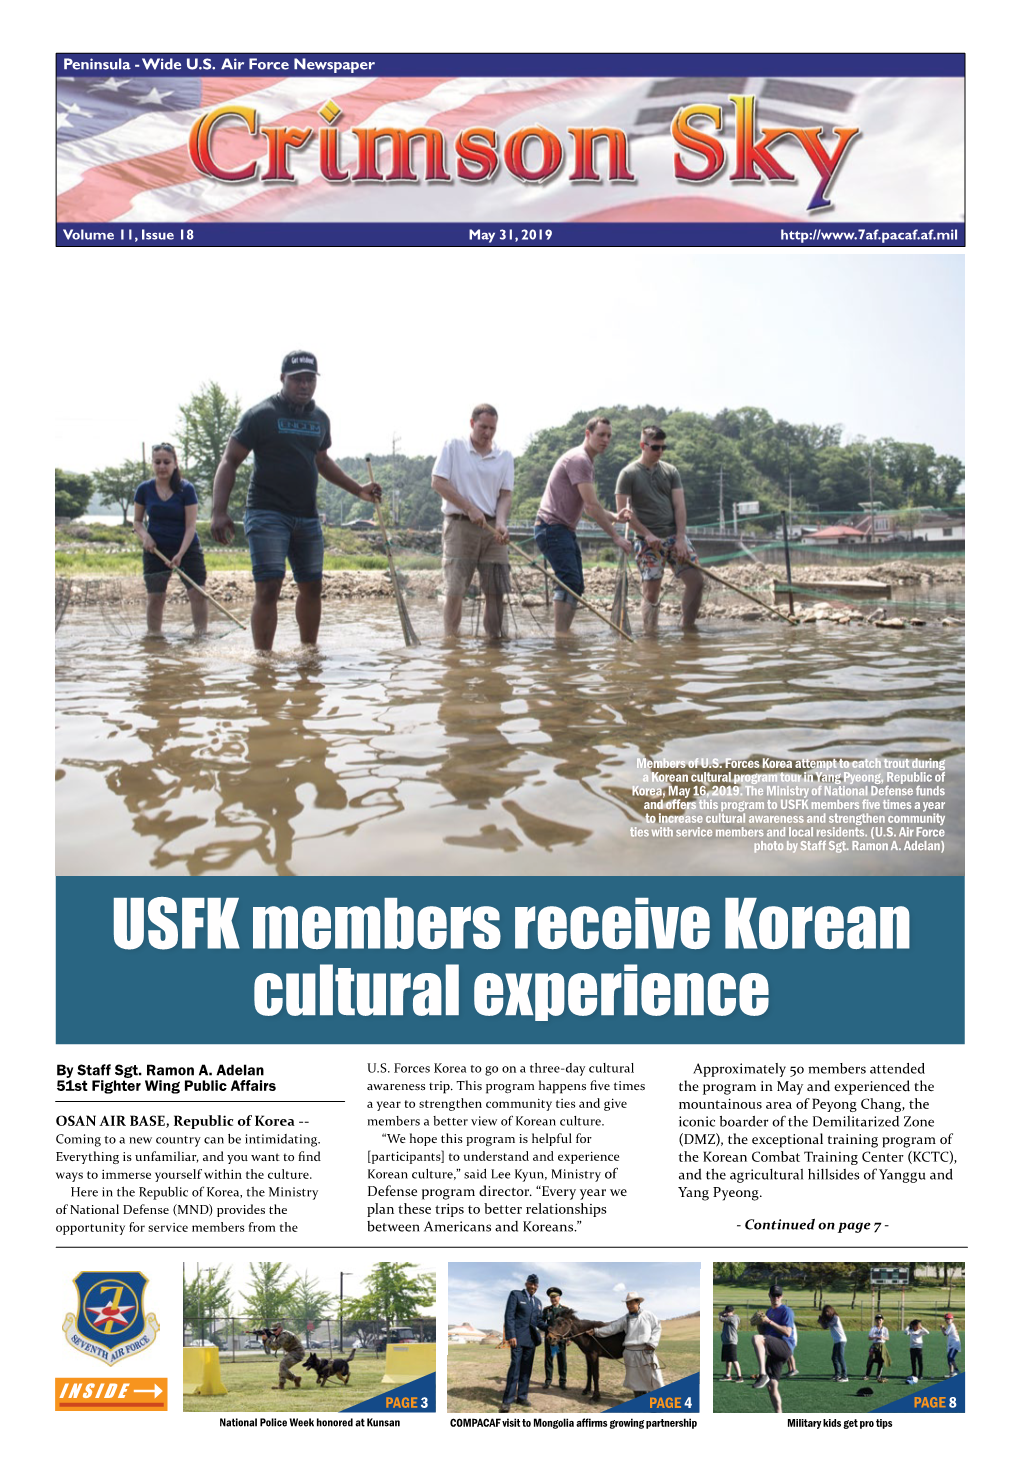 USFK Members Receive Korean Cultural Experience